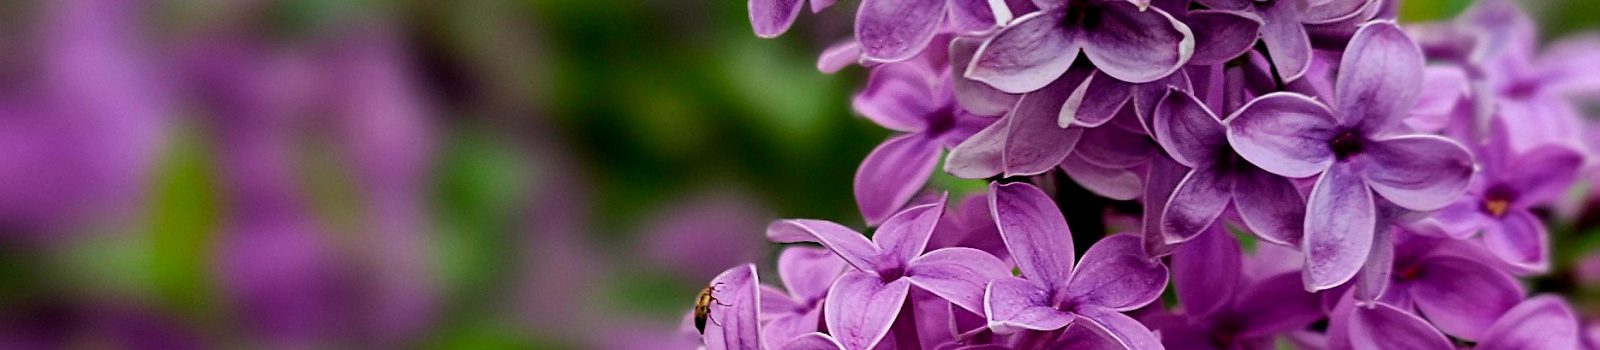 Berlín en primavera: el mágico mundo de las lilas